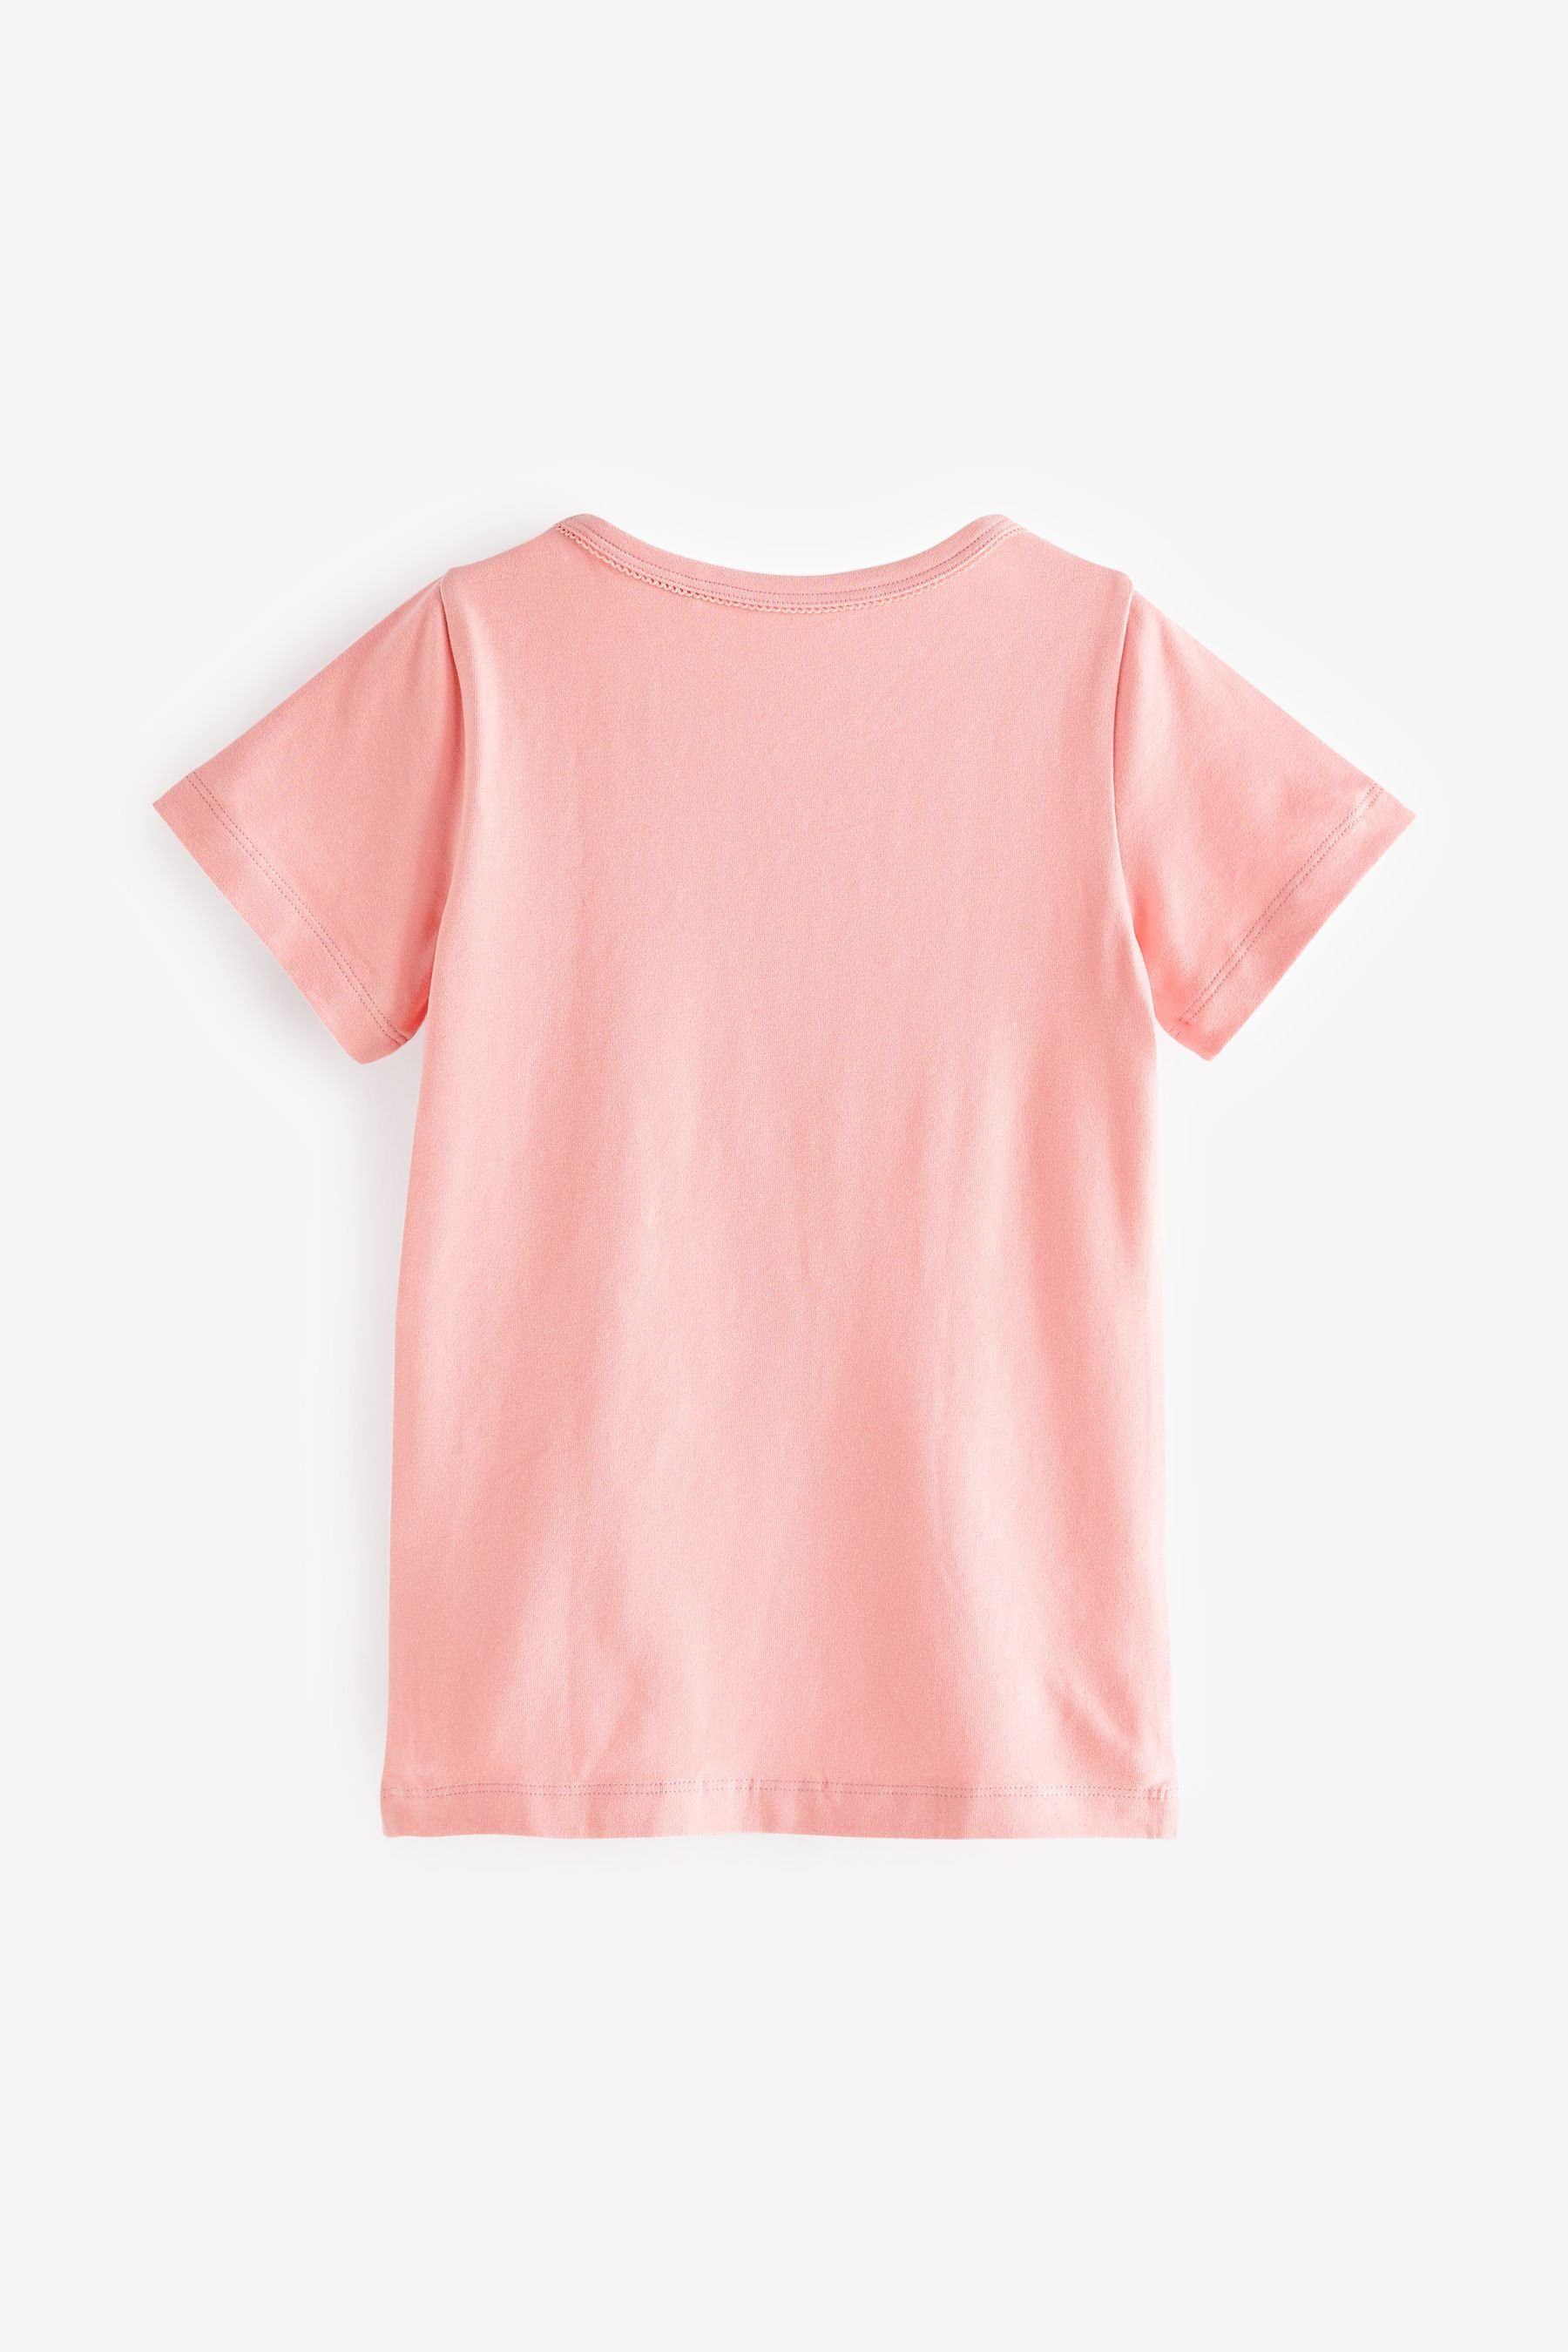 Next Unterhemd Unterhemden, 2er-Pack (2-St) Short Sleeved Pink